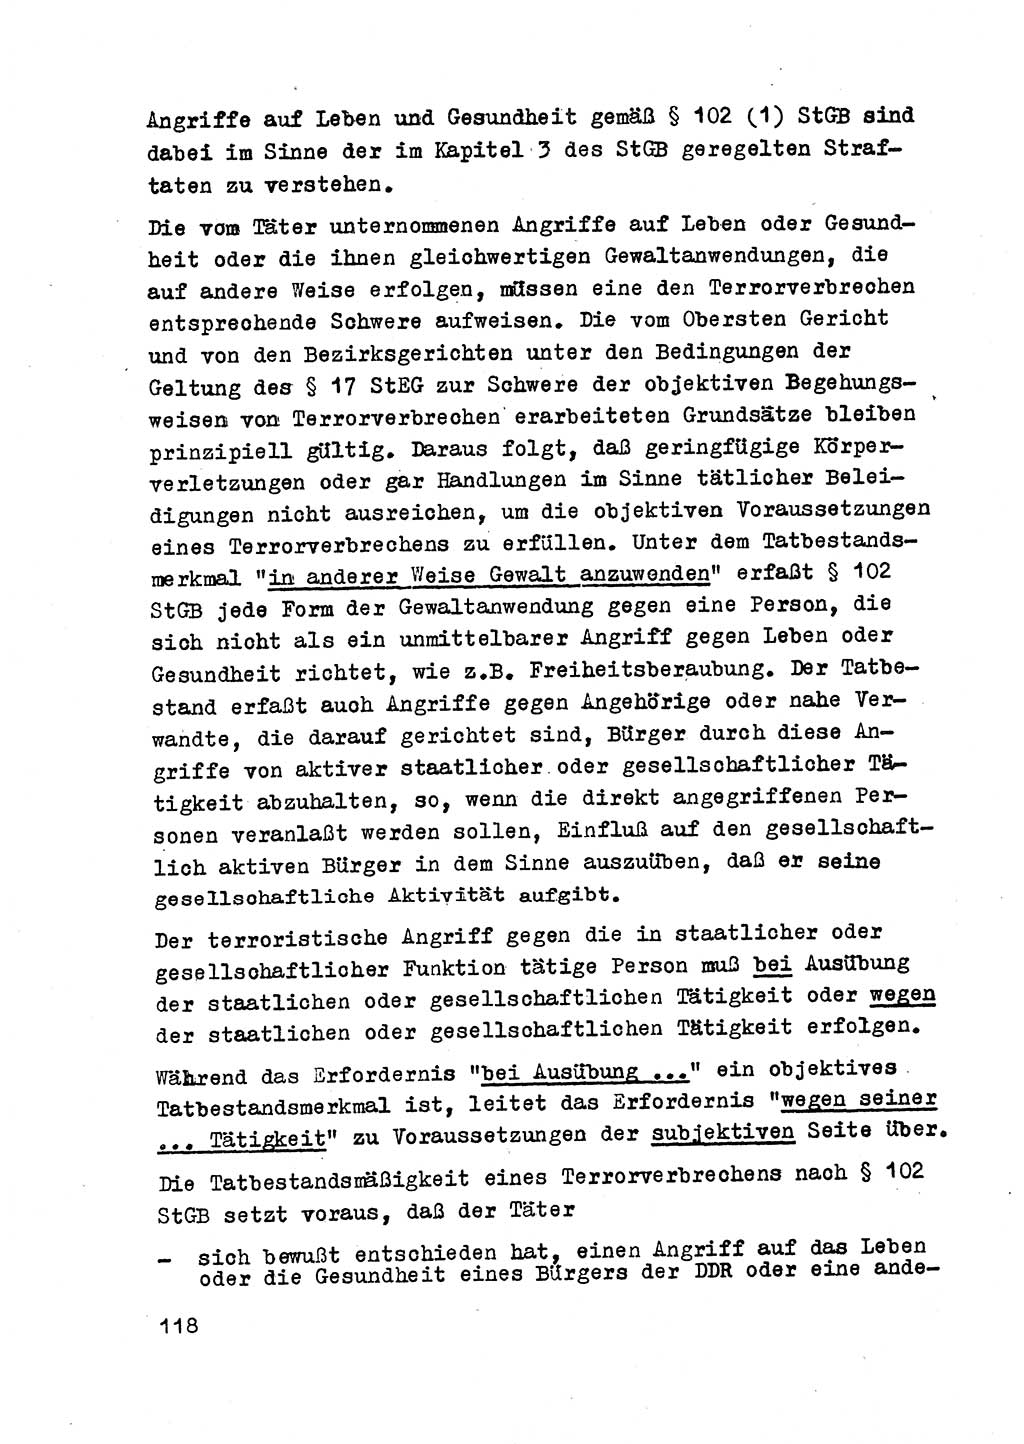 Strafrecht der DDR (Deutsche Demokratische Republik), Besonderer Teil, Lehrmaterial, Heft 2 1969, Seite 118 (Strafr. DDR BT Lehrmat. H. 2 1969, S. 118)